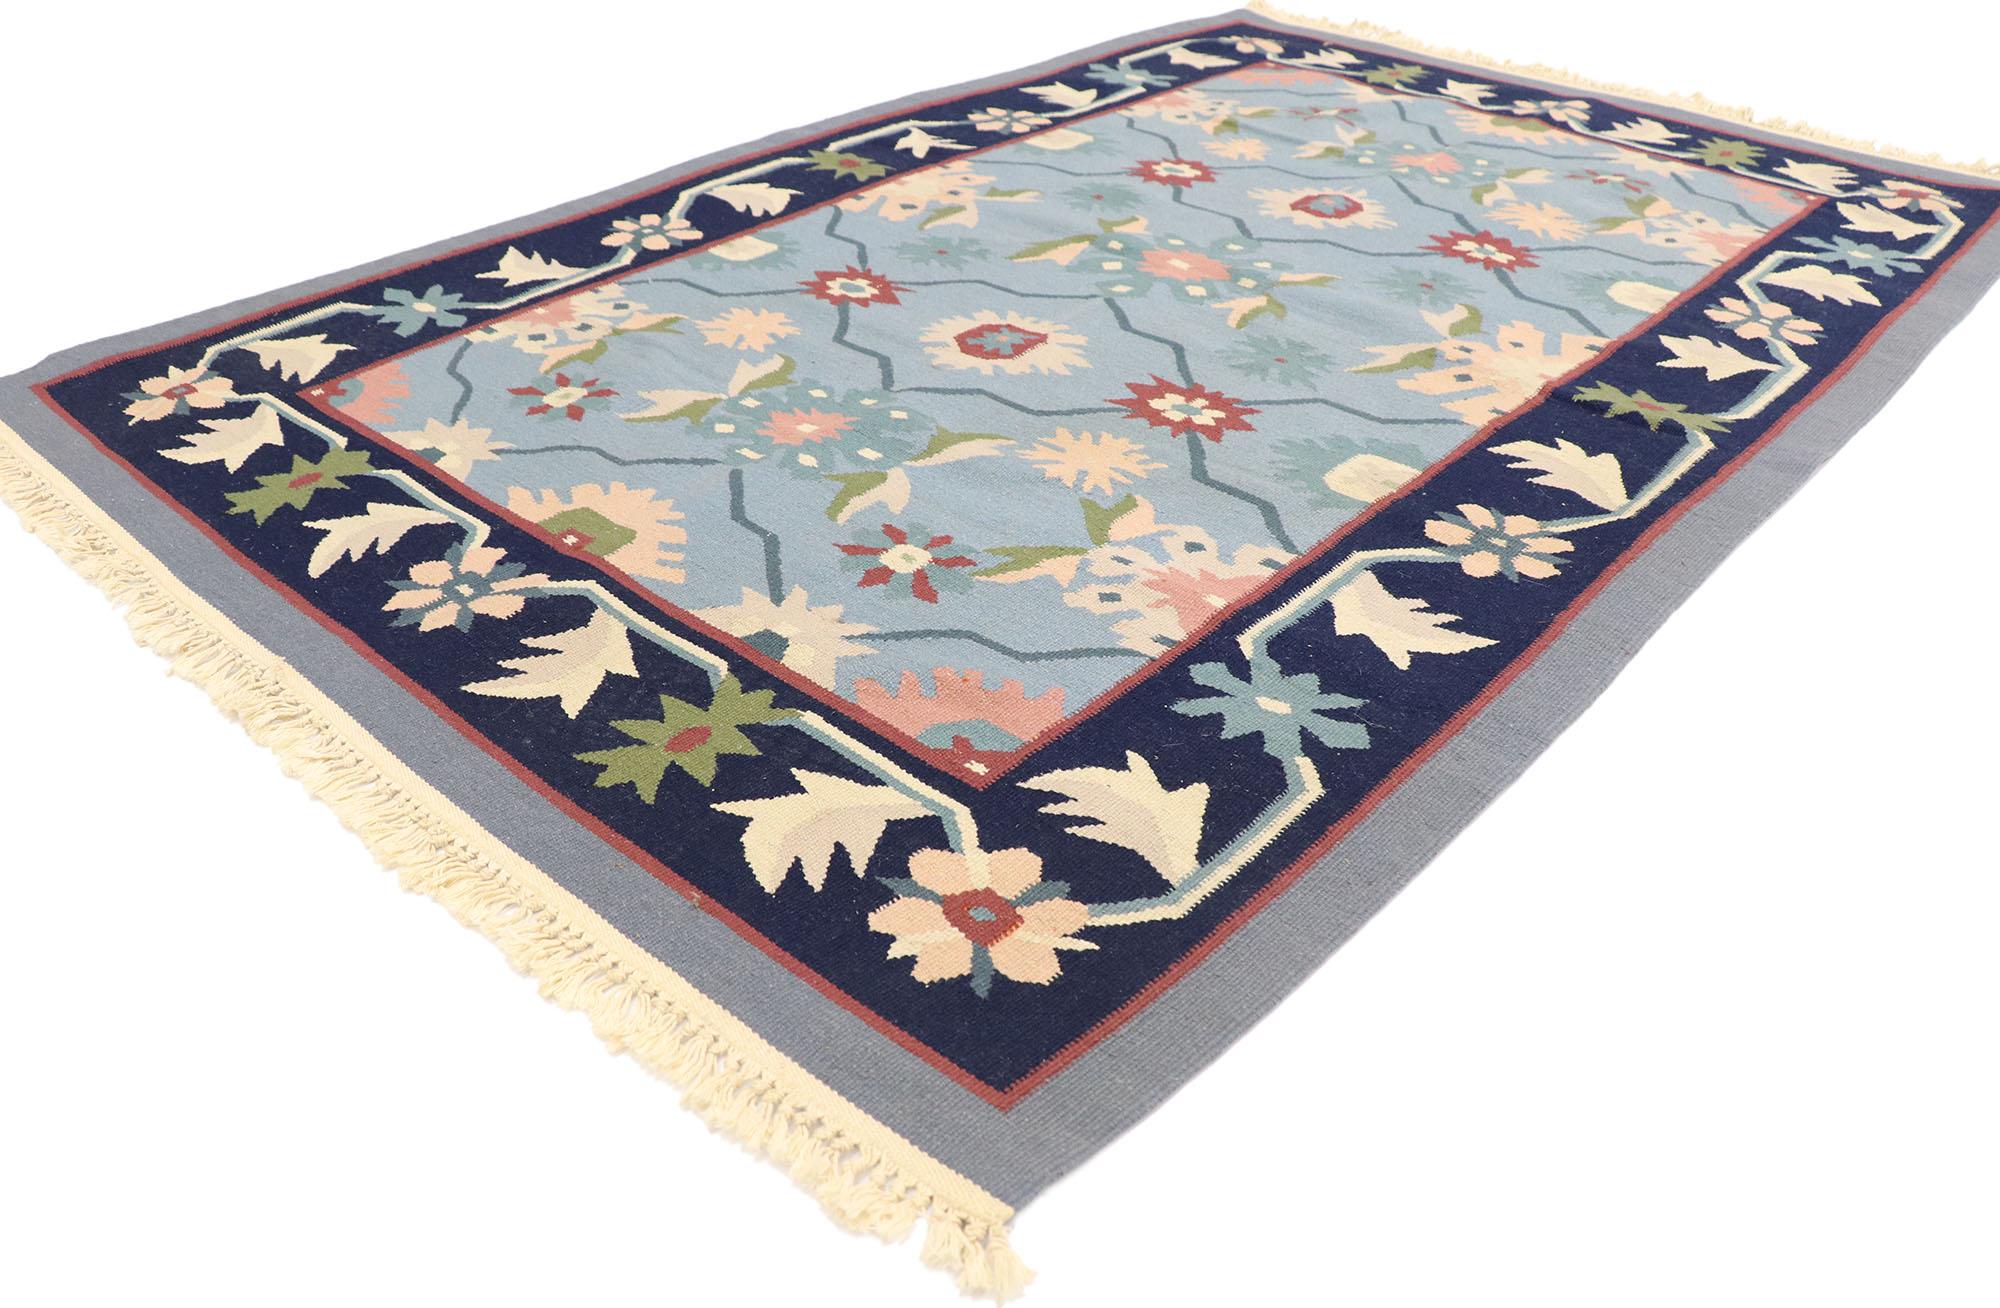 77954 Vintage Rumänisch Floral Kilim Teppich mit Folk Art Landhausstil 03'11 x 05'11. Dieser handgewebte rumänische Kelimteppich mit Blumenmuster aus Wolle ist feminin und wunderschön traditionell und wird Sie beeindrucken. Das himmelblaue,